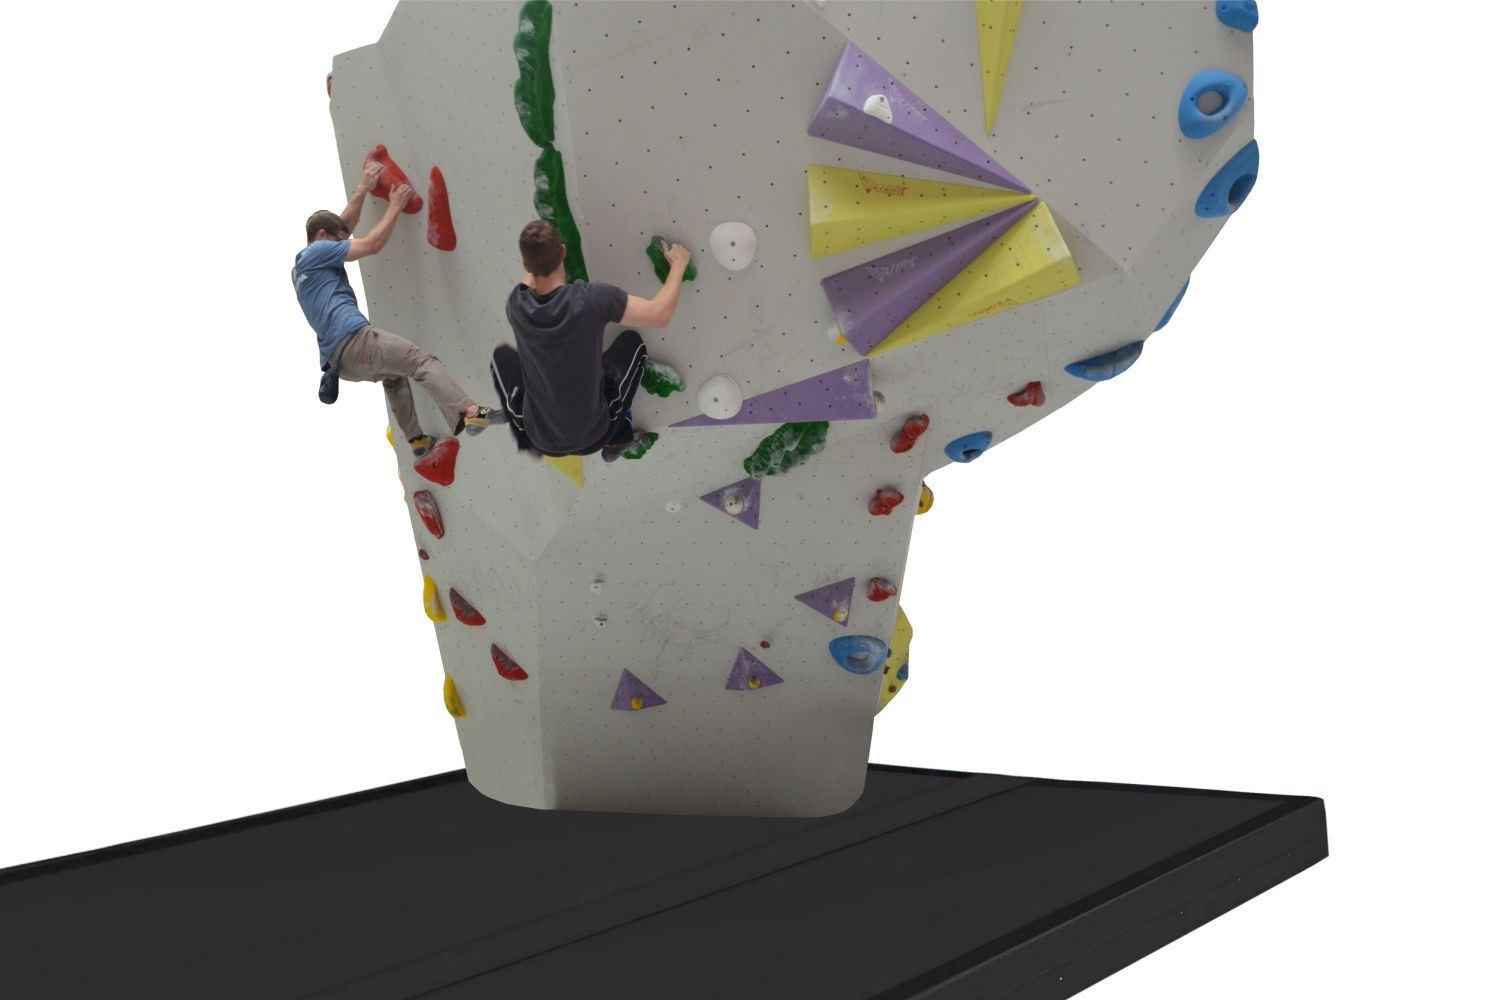 Bouldermatte-Boulderfelsen - Die Bouldermatte-Profi mit dem speziellen Sandwichtkern bietet den idealen Fallschutz für den Einsatz beim Bouldern. 